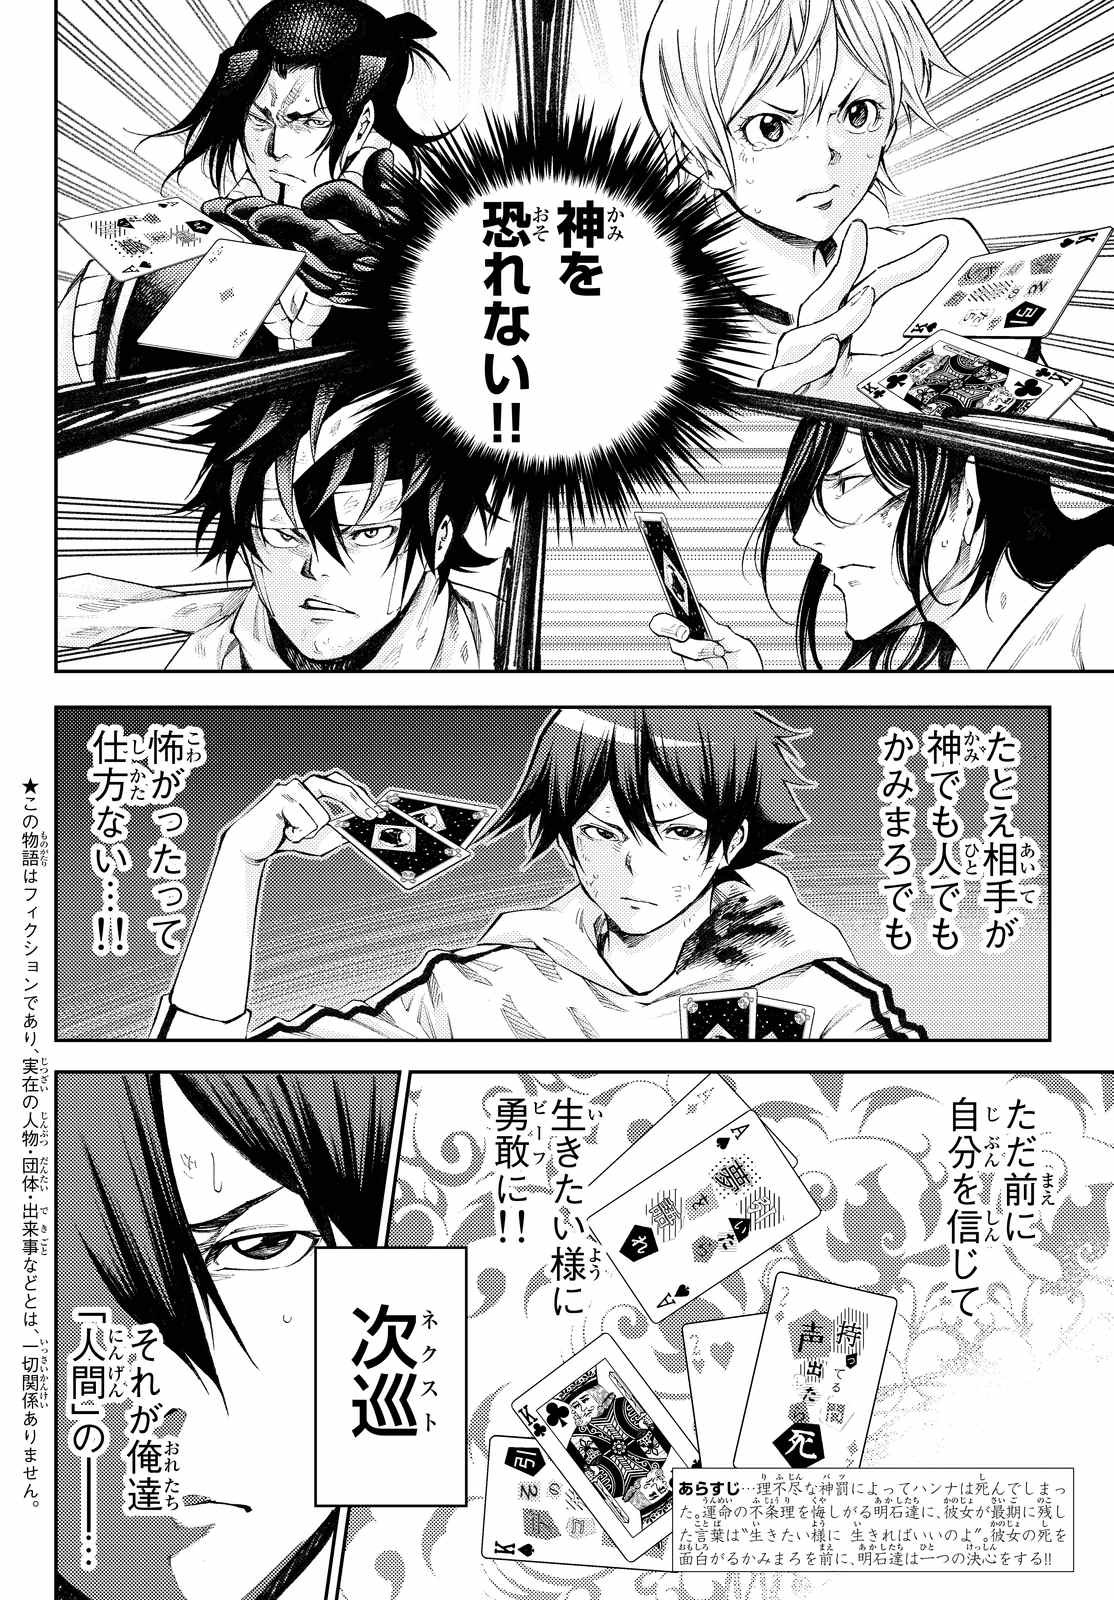 Kamisama_no_Ituori - Chapter 172 - Page 2